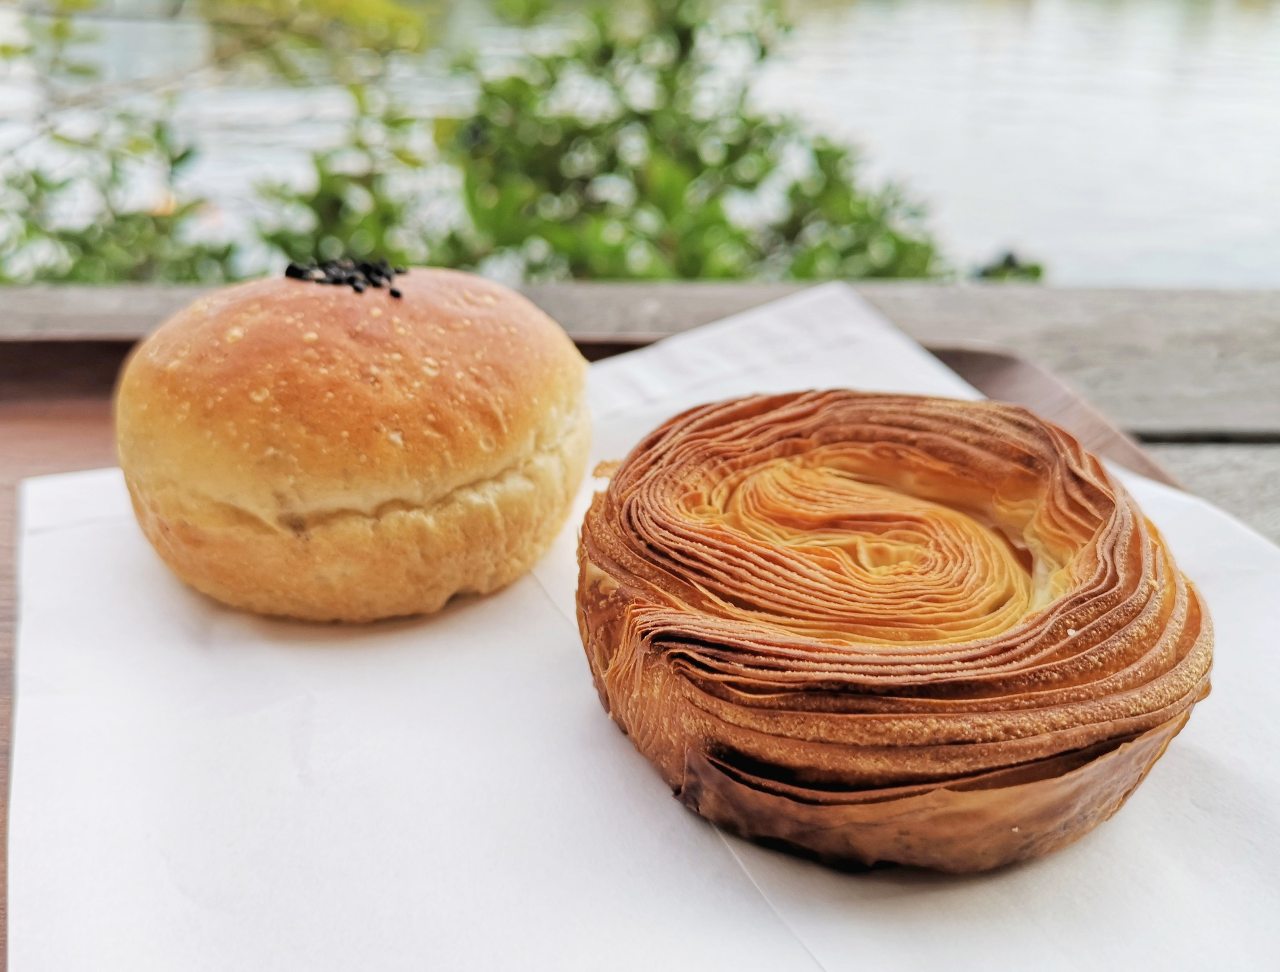 愛知県名古屋市・「バーミキュラ ビレッジ」、「VERMICULAR POT MADE BAKERY」鍋クロワッサン・鍋炊きつぶあんパン